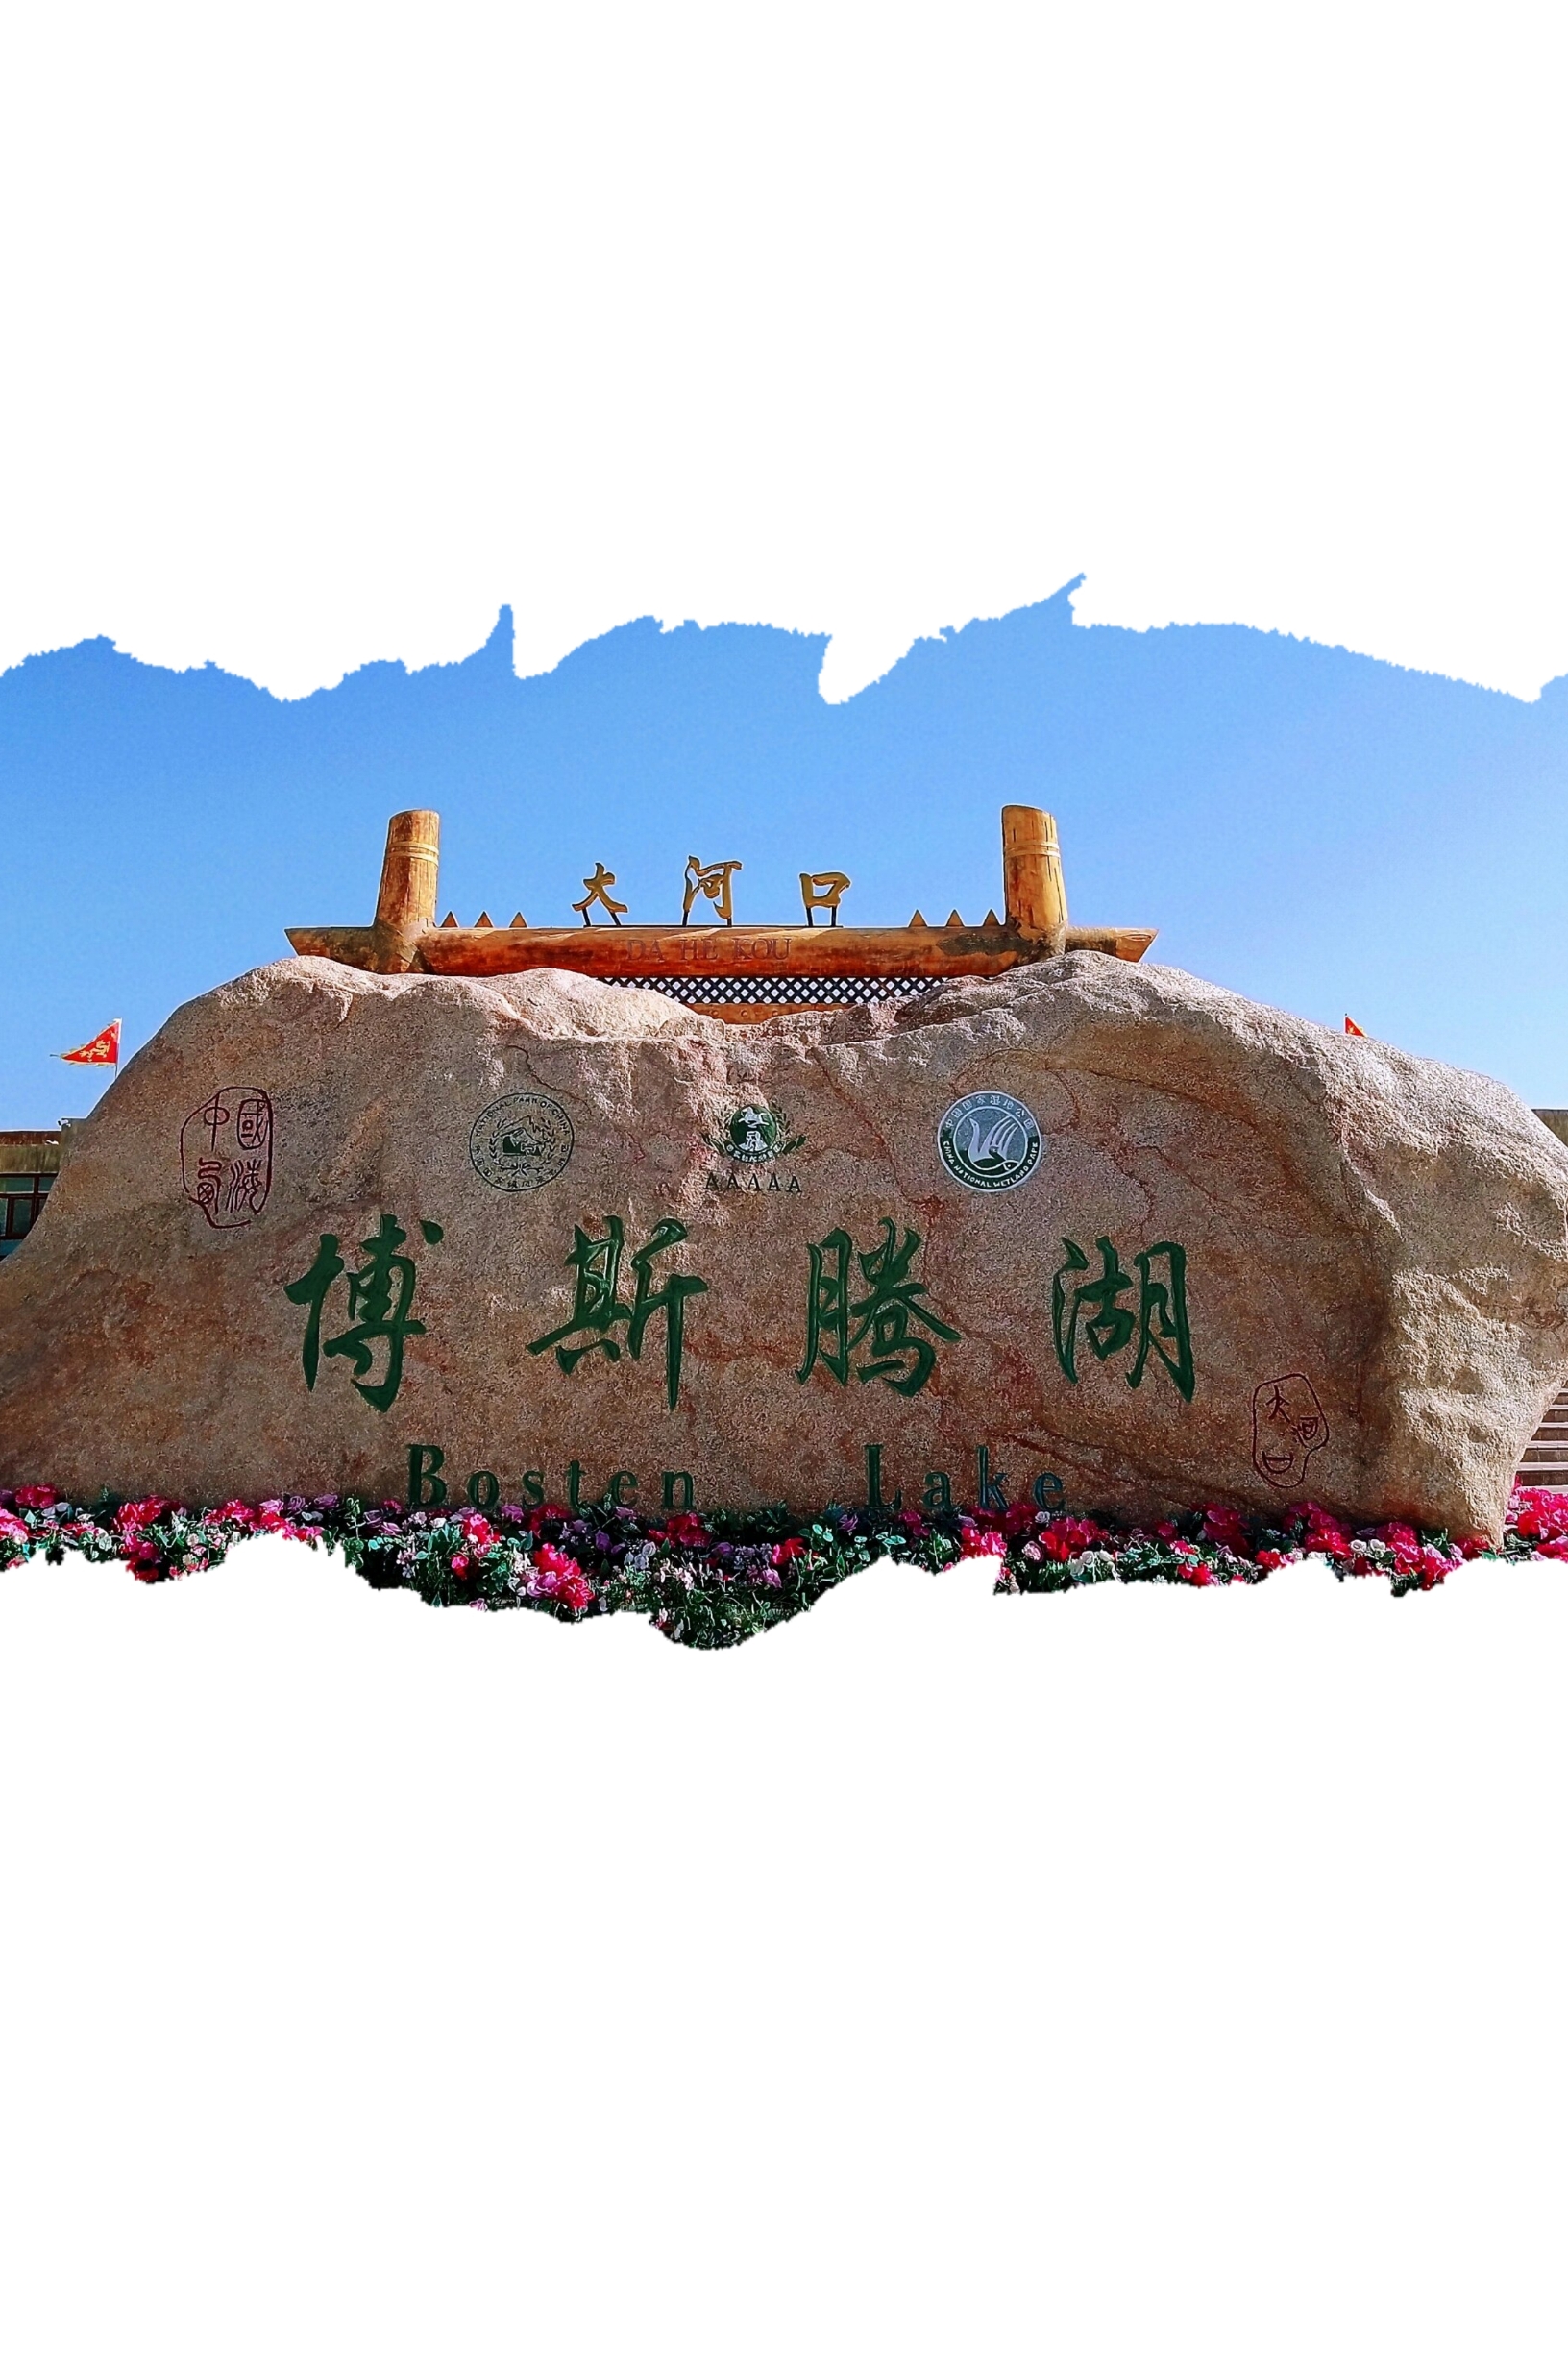 🌊博斯腾湖 | 体验中国最大内陆淡水湖的壮阔与美丽🐟🏞